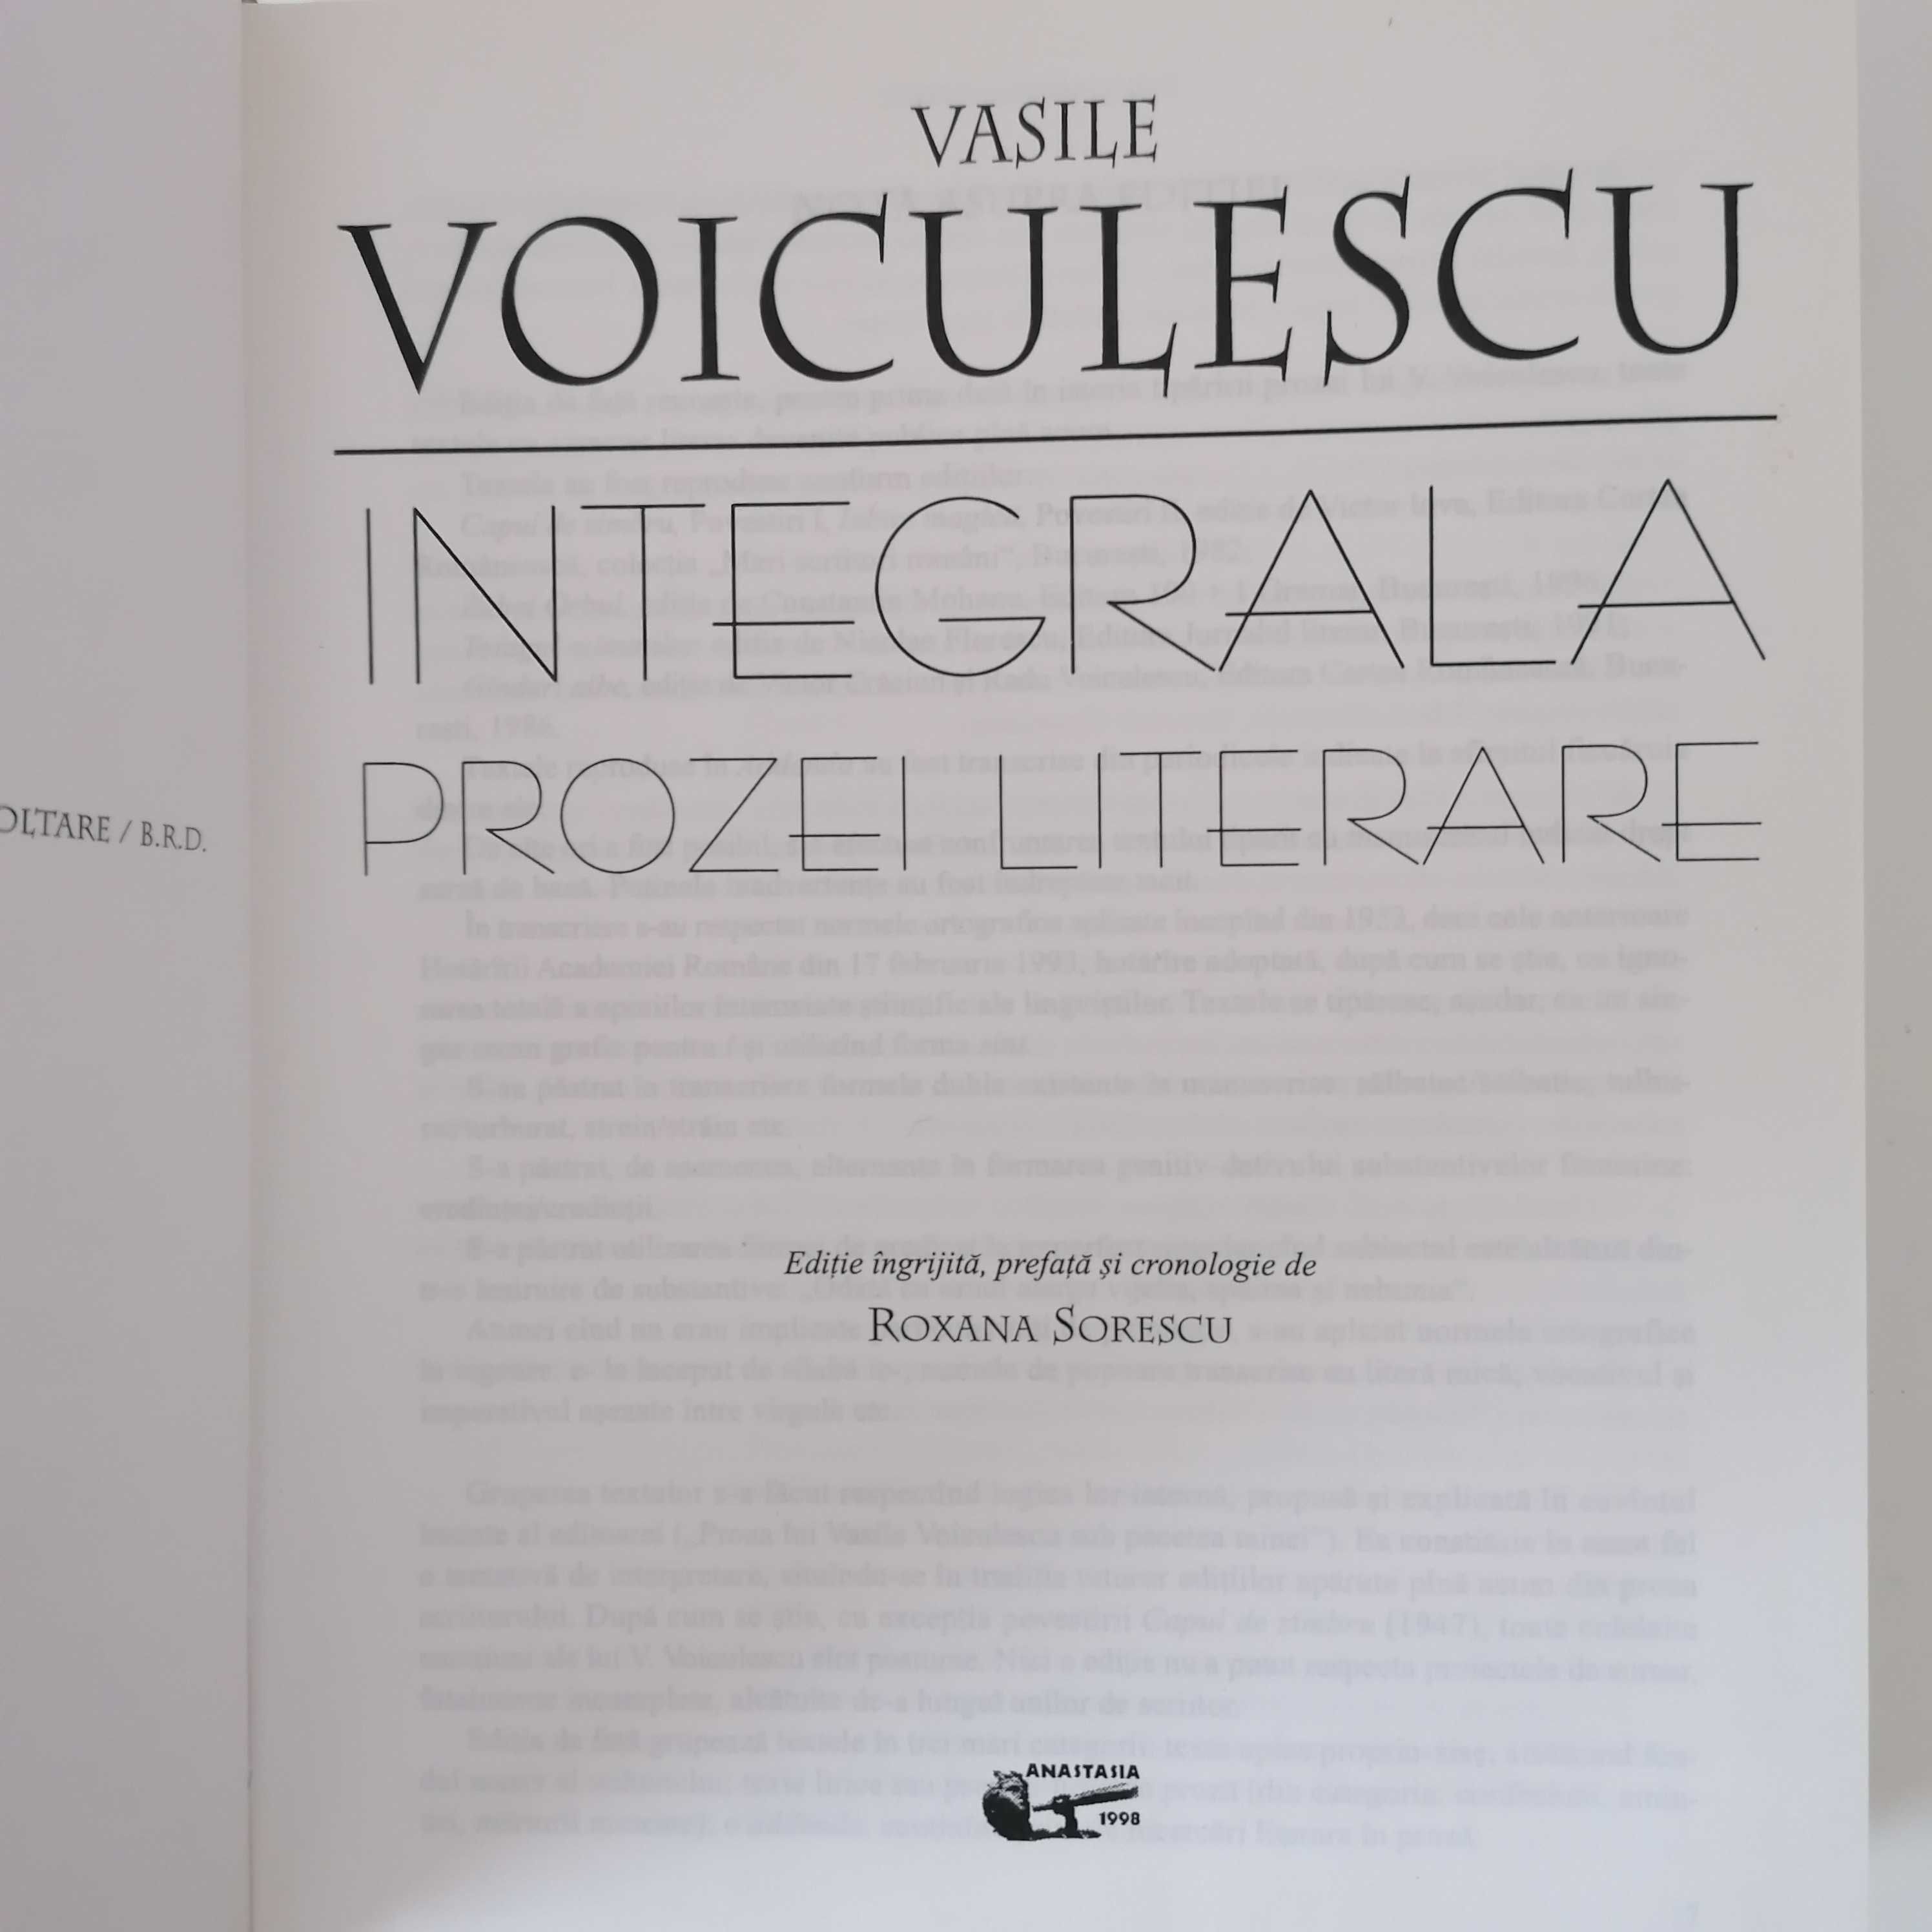 Vasile VOICULESCU - Integrala Prozei Literare (Anastasia, 1998)